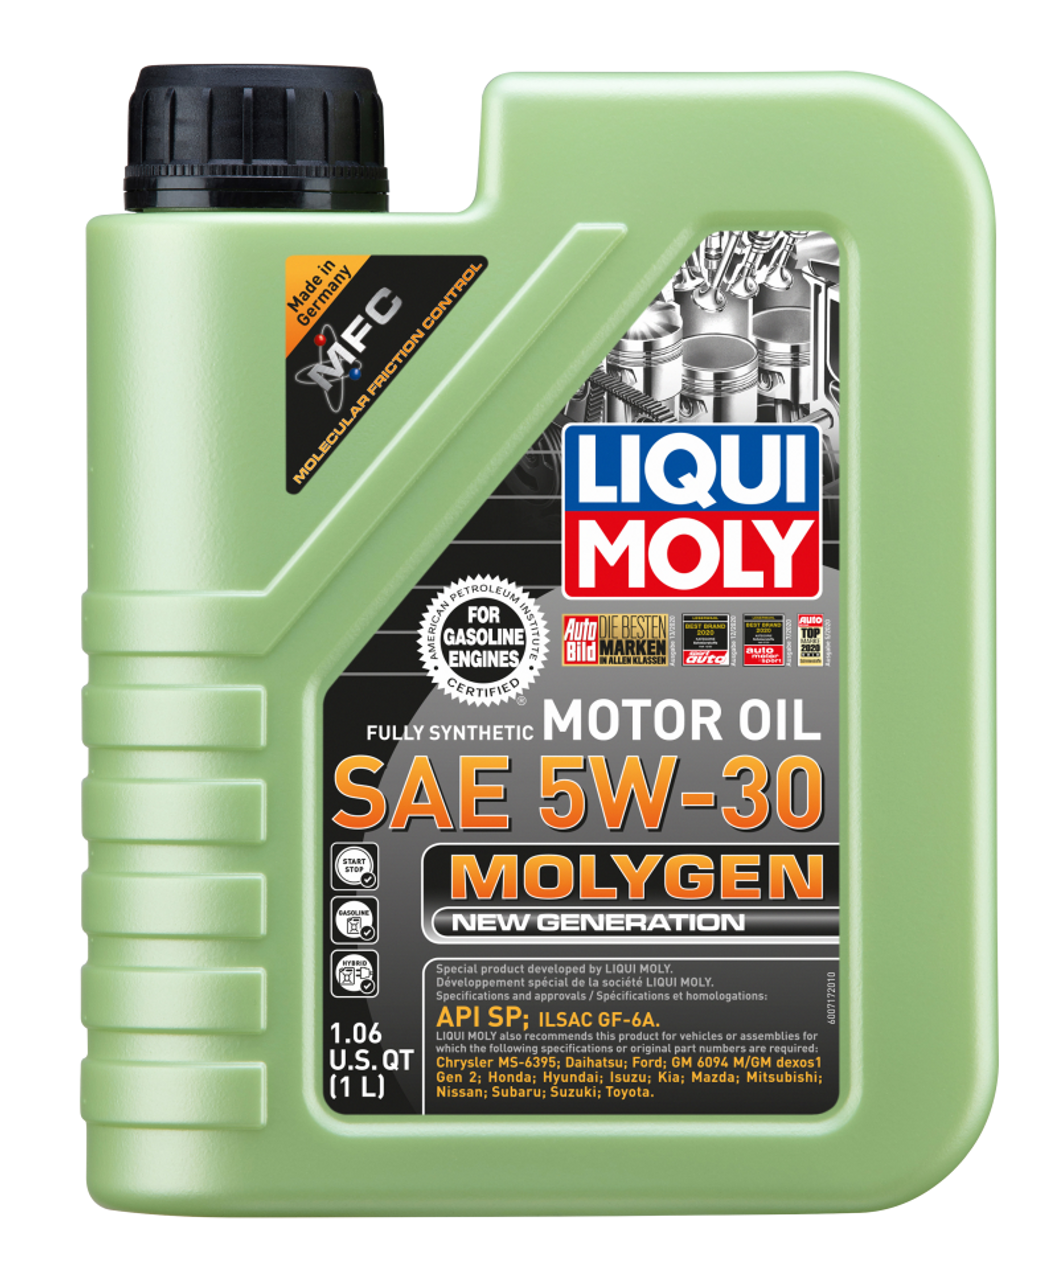 Liqui Moly 5W-30 Molygen New Generation Engine Oil (1L) - Liqui Moly LM20226